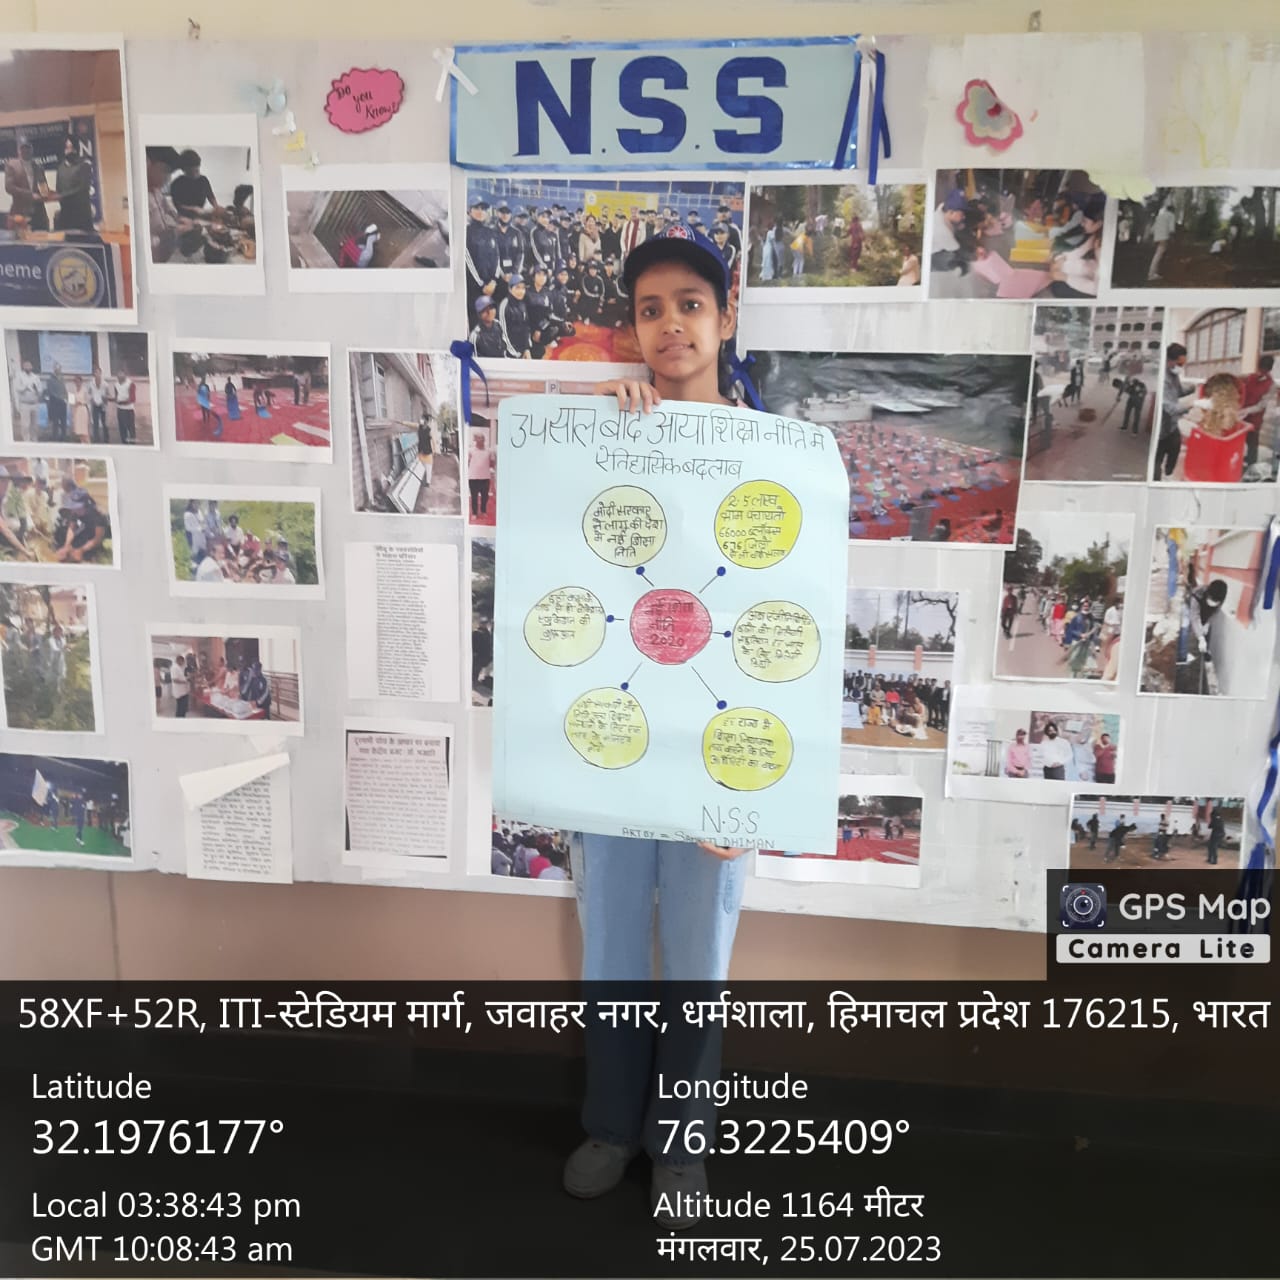 NSS की धौलाधार परिसर (UNIT 1) ईकाई की ओर से राष्ट्रीय शिक्षा नीति-2020 के क्रियान्वन संबंधी तैयार पोस्टर को दिखाती छात्रा।